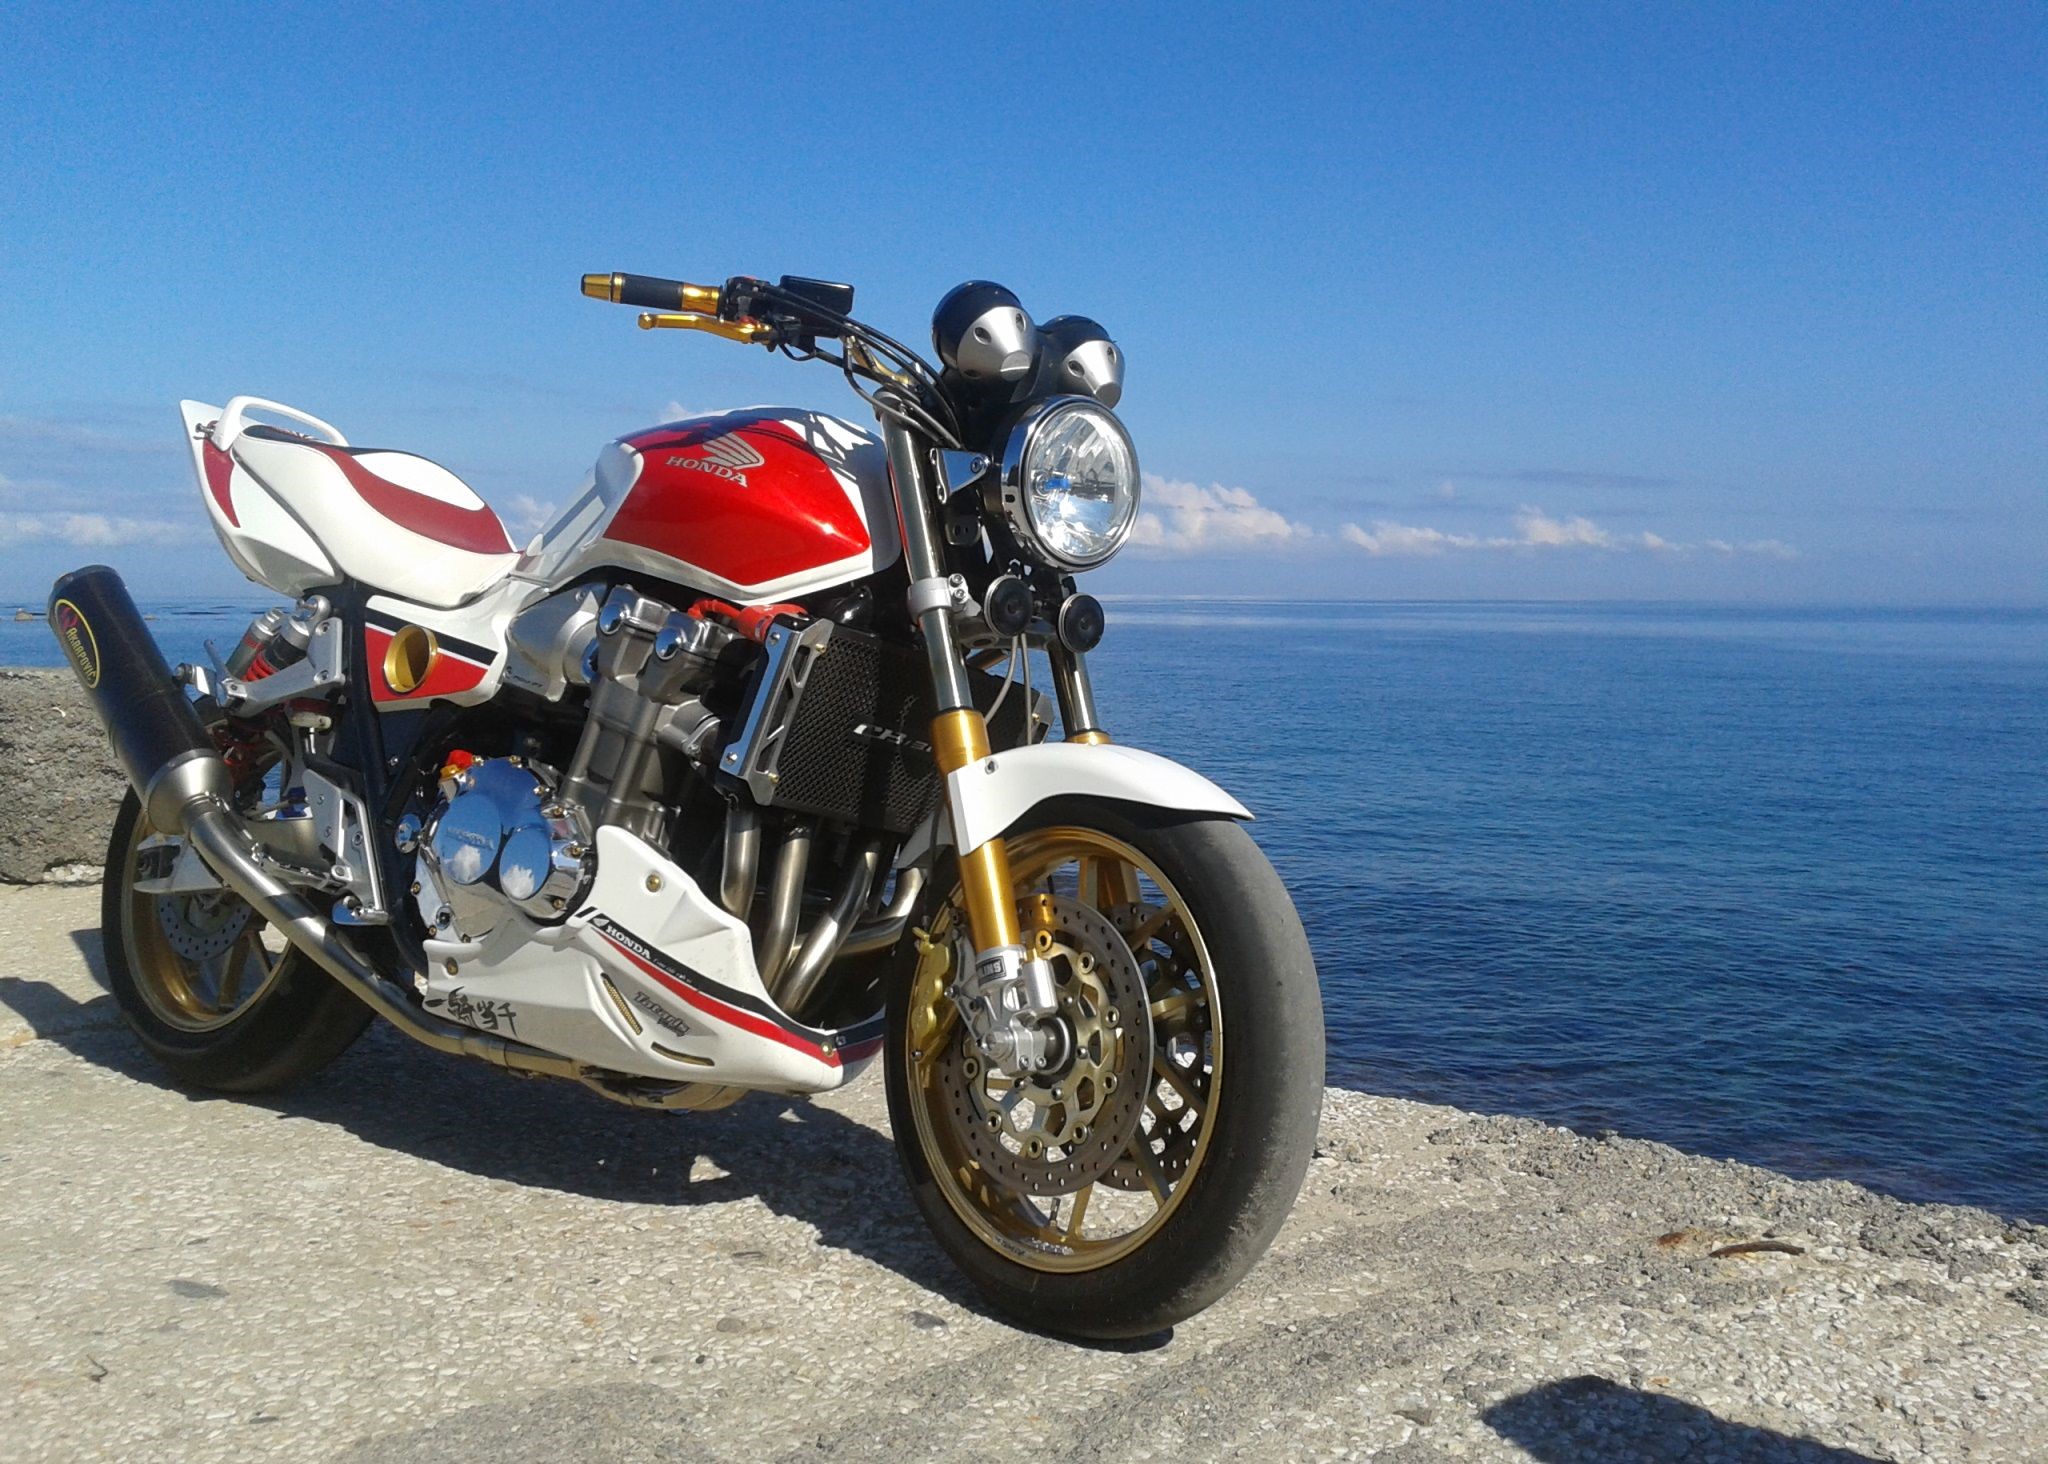 زیباترین تصویر موتور Honda CB1300 در نزدیکی دریای آبی